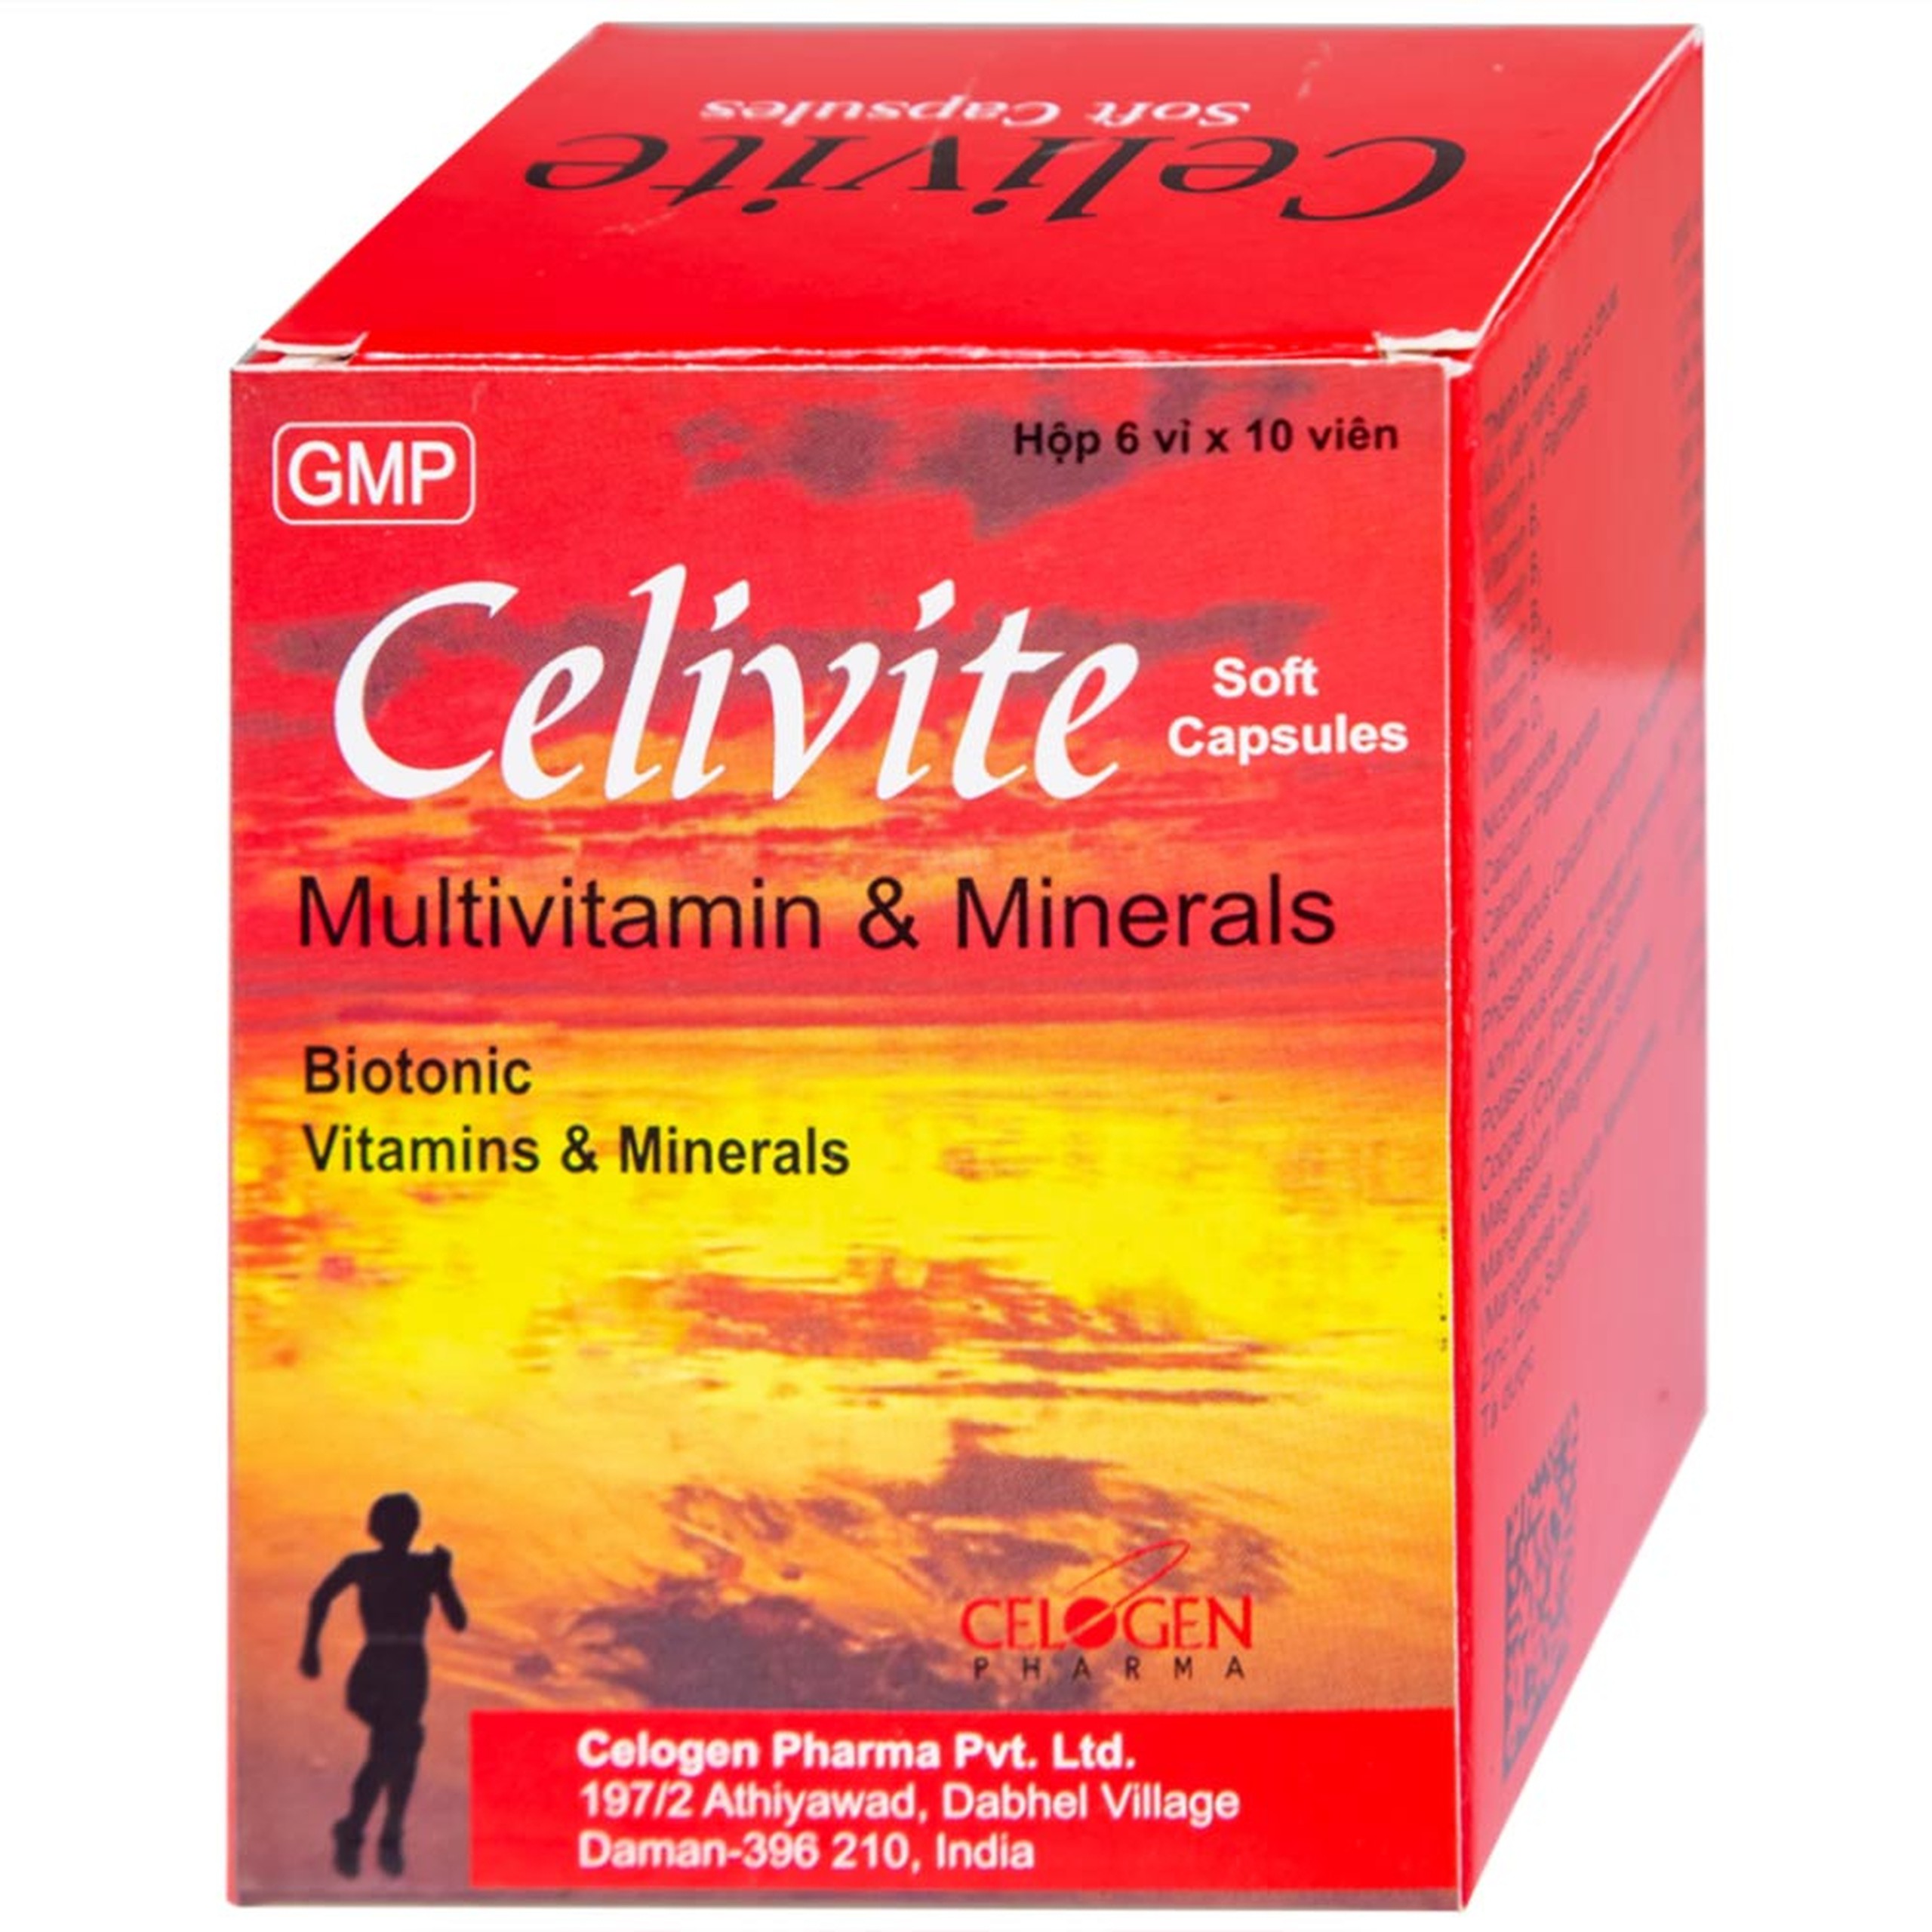 Thuốc Celivite Celogen Pharma bổ sung vitamin và khoáng chất (6 vỉ x 10 viên)